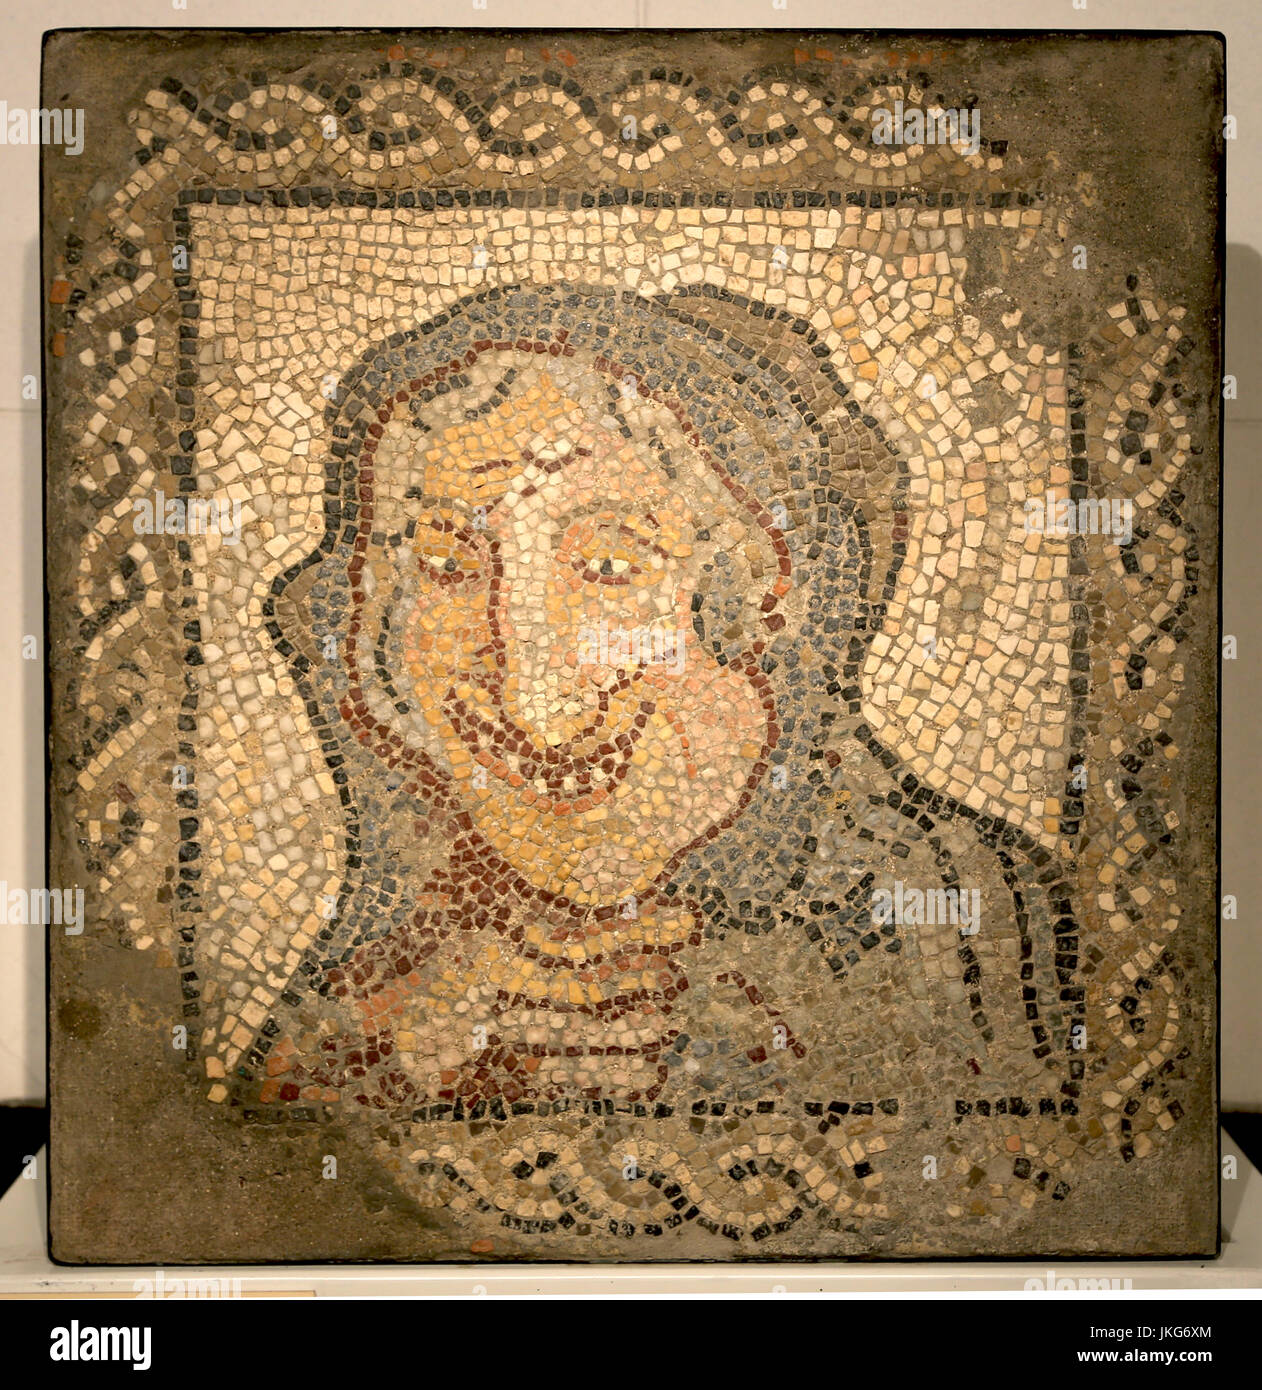 Mosaik, eine alte Frau darstellt. Römische Kultur, Marmor in verschiedenen Farben. 3. Jahrhundert n. Chr. Italica, Sevilla, Spanien. Stockfoto